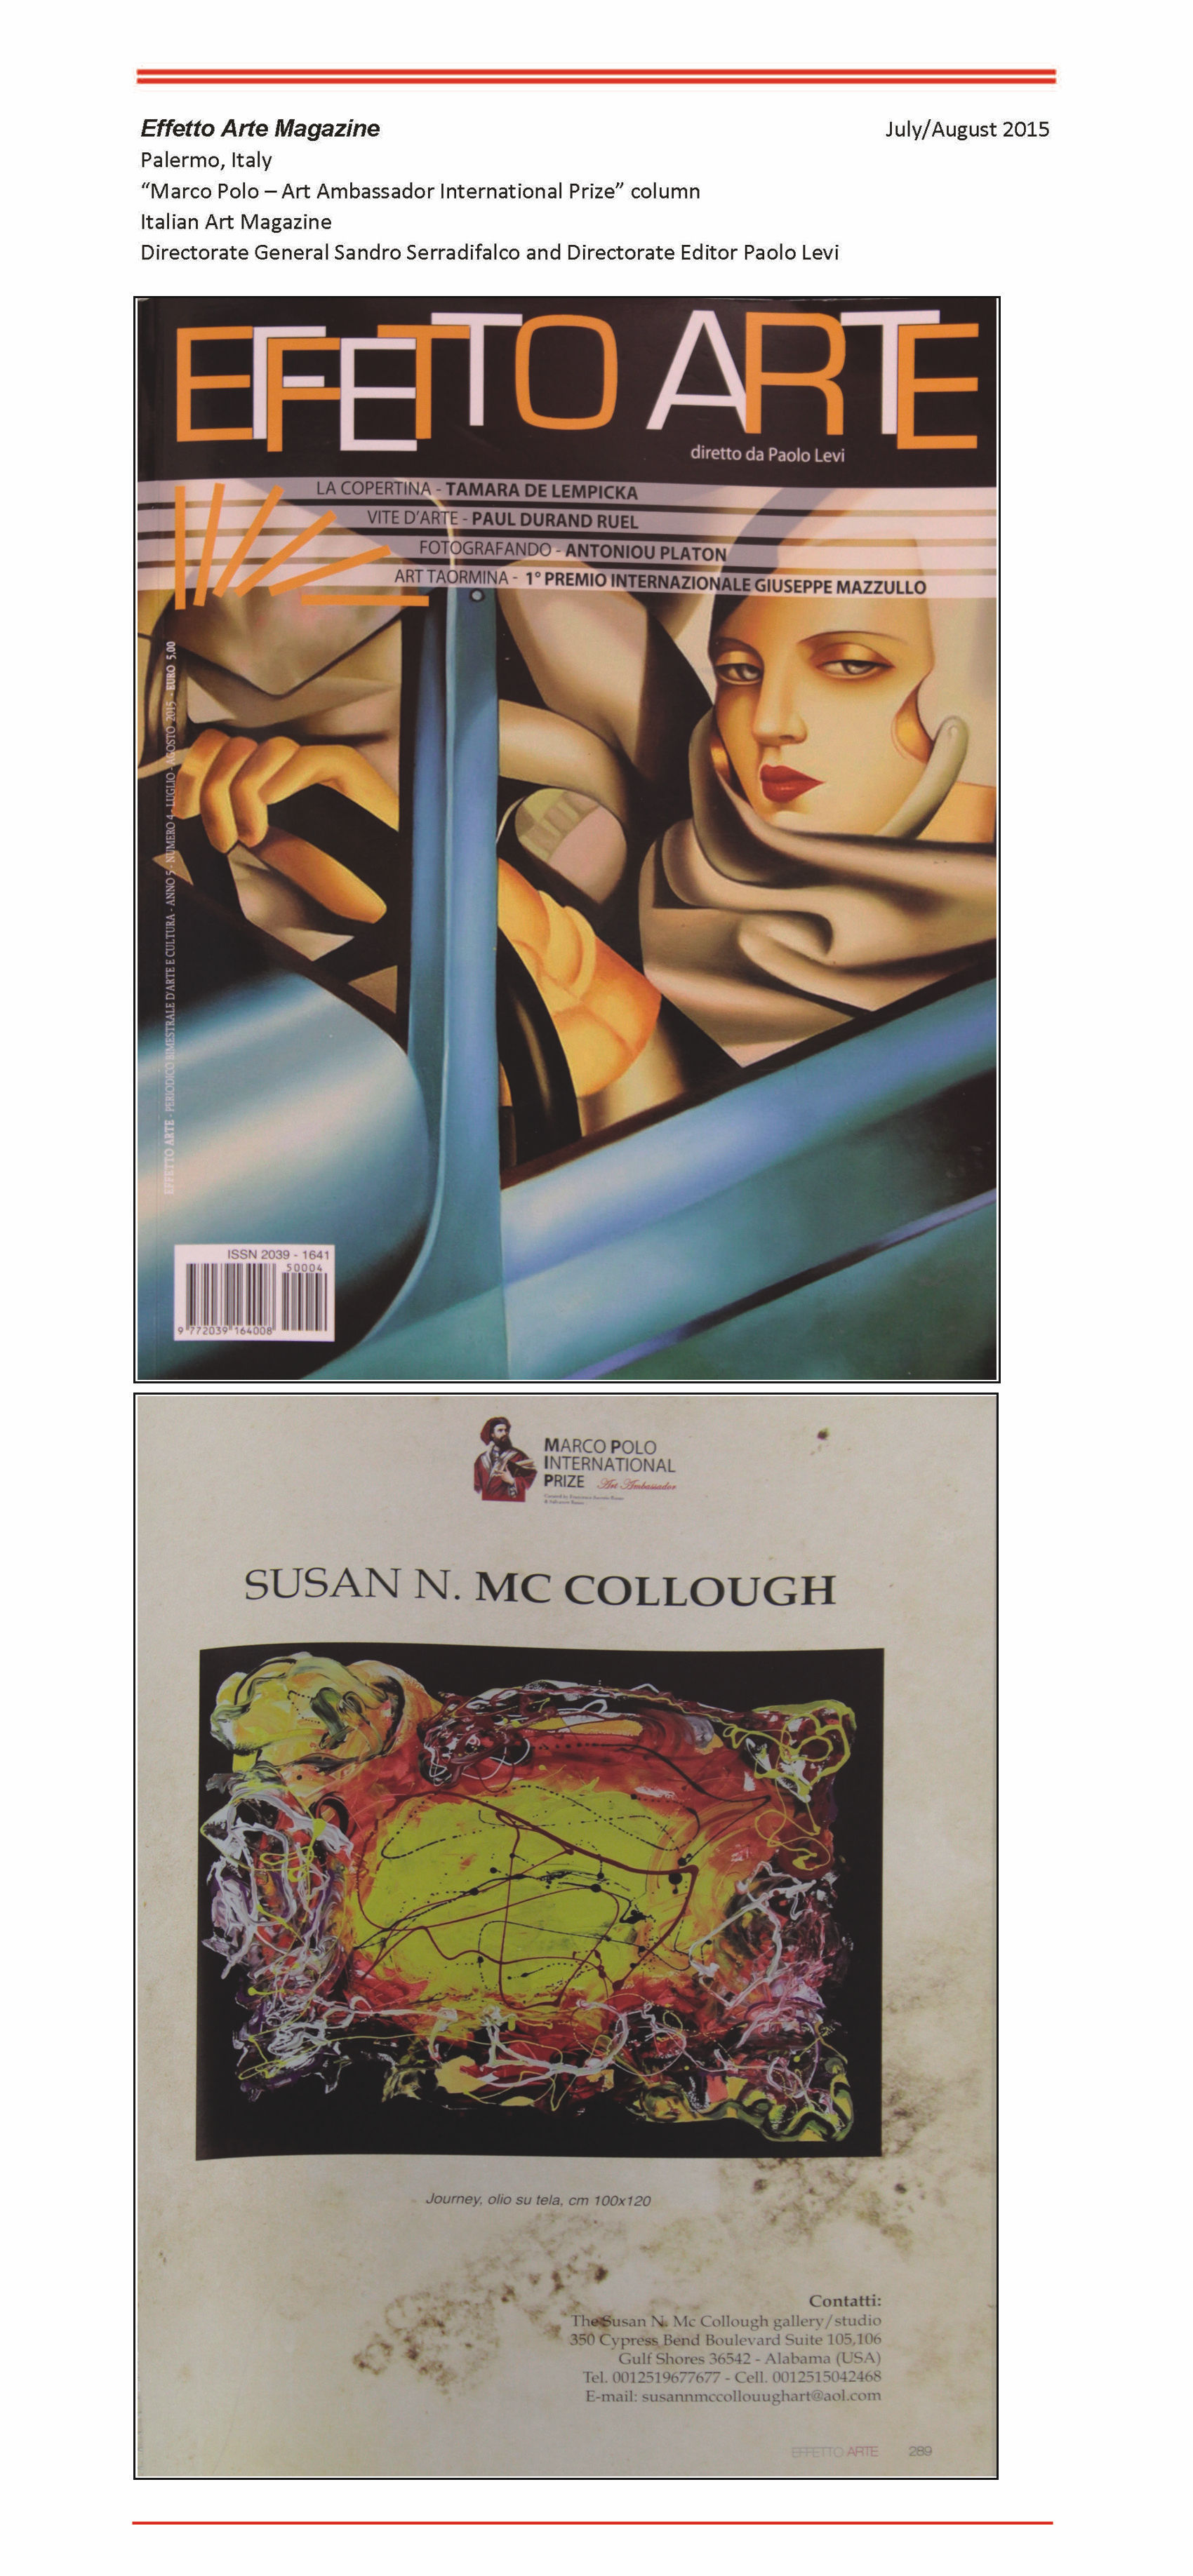 SUSAN N. MCCOLLOUGH - PUBLICATIONS